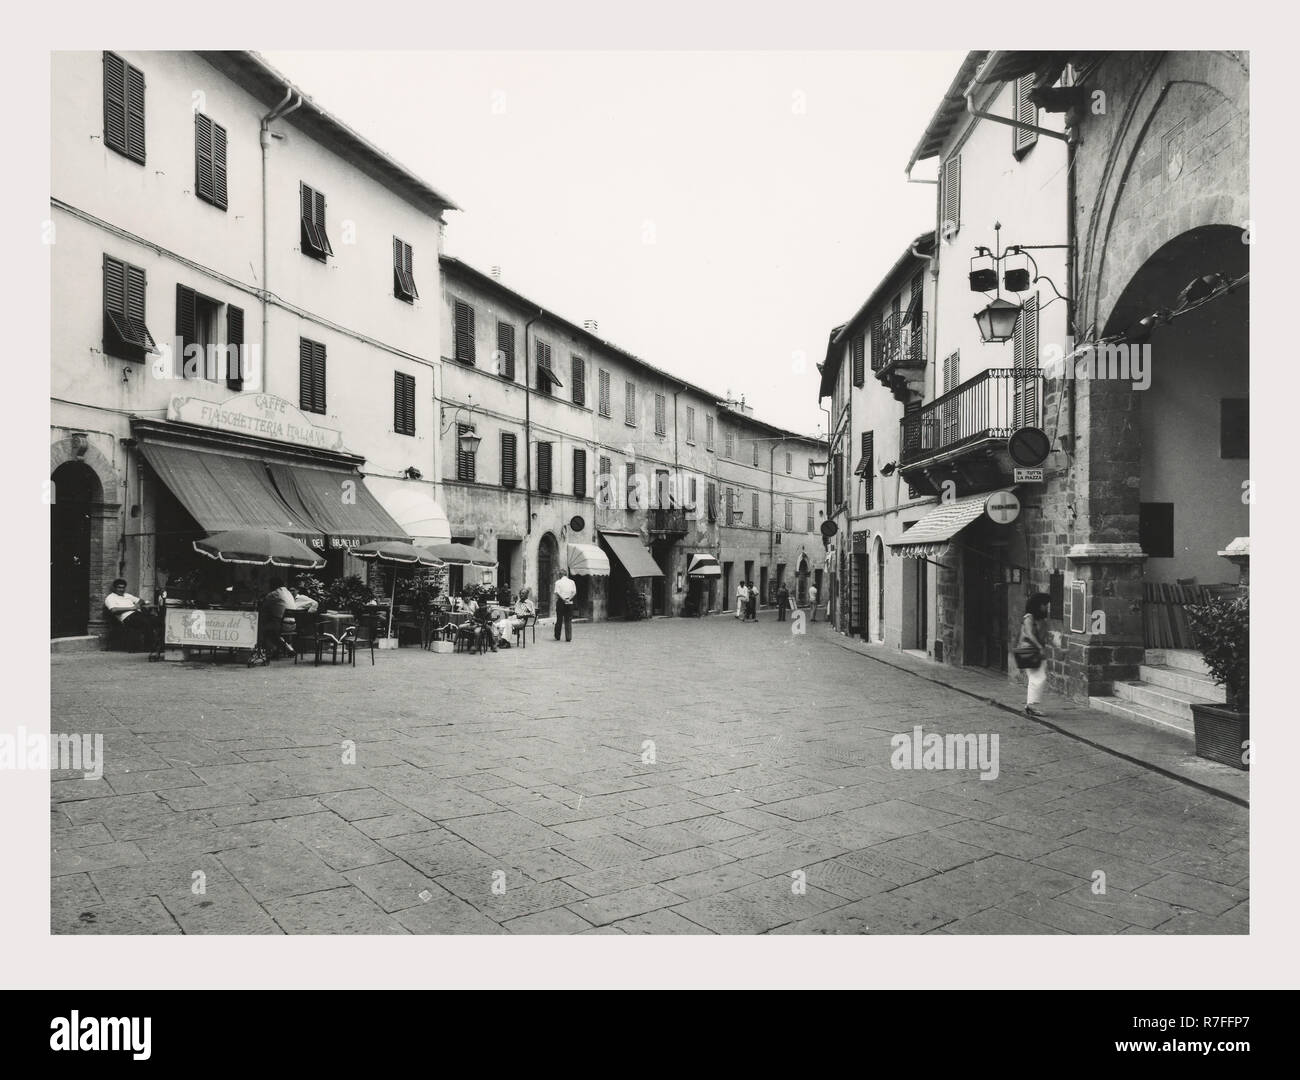 Siena Toscana Montalcino opiniones generales, esta es mi Italia, el país de la historia visual, Medieval, estructuras no identificadas en el centro de la ciudad Foto de stock